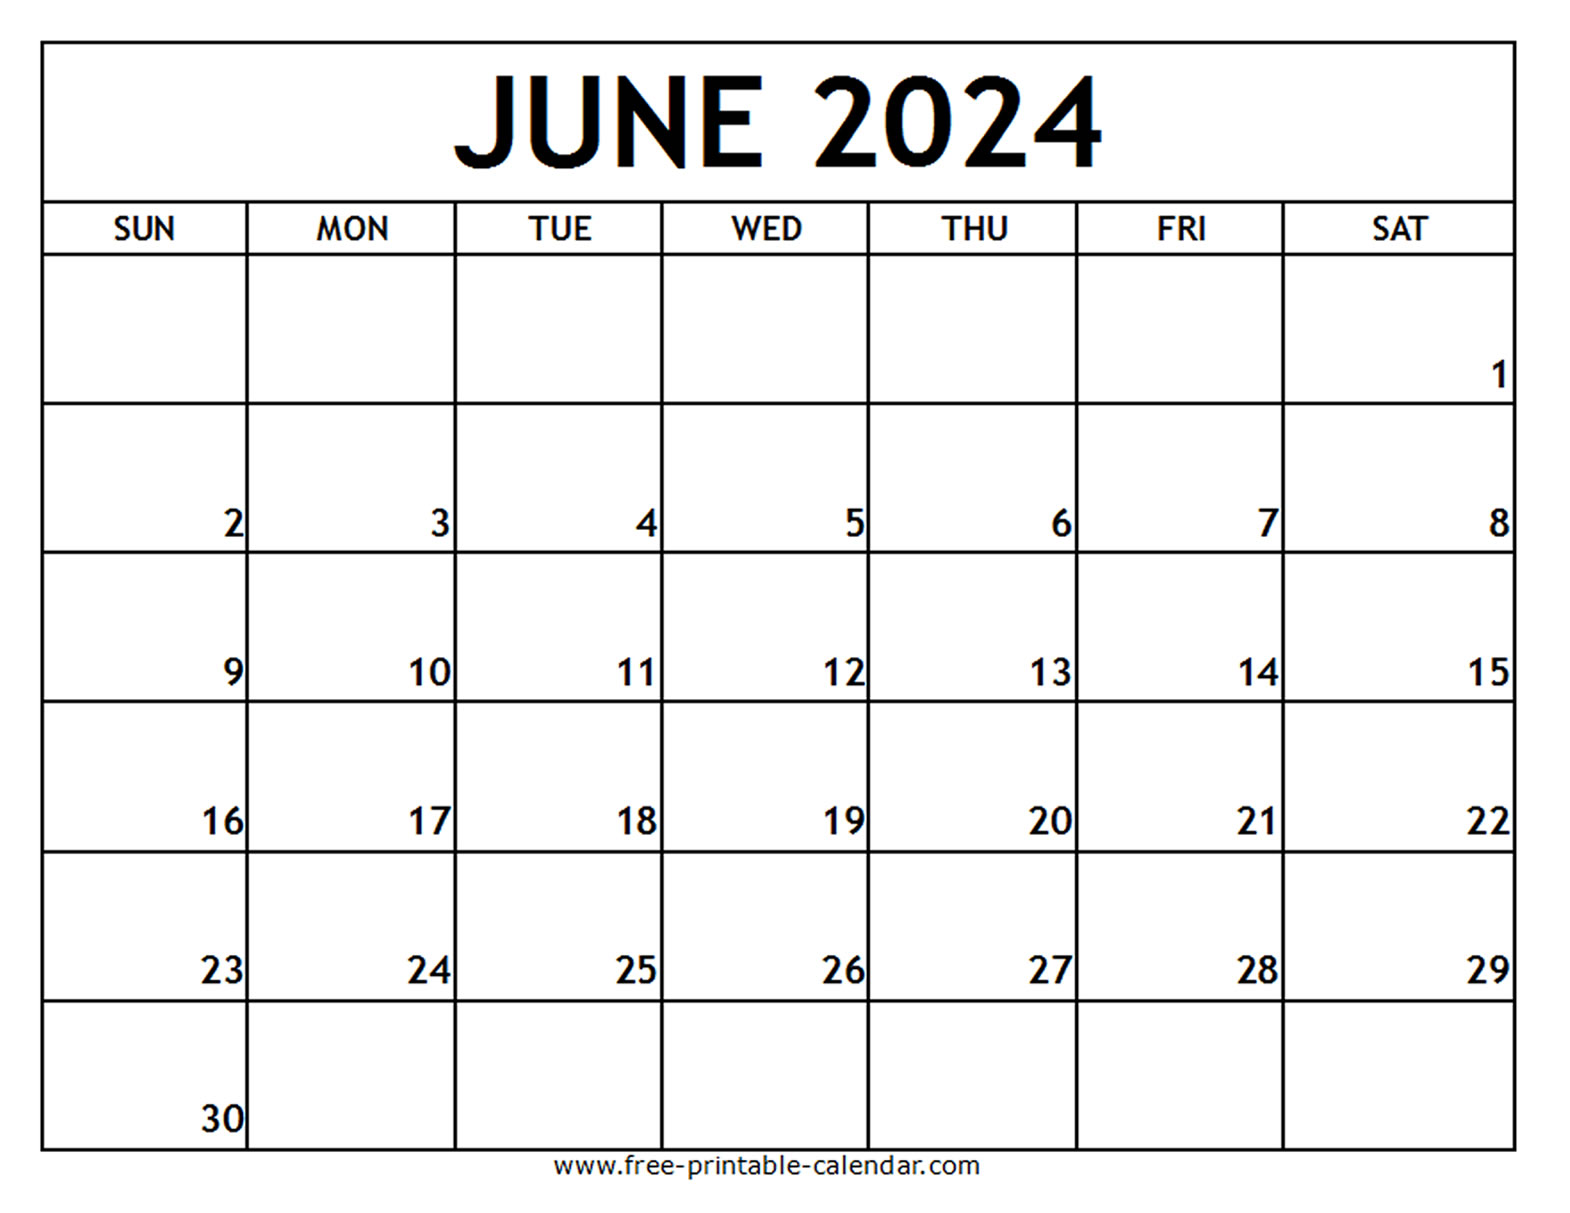 June 2024 Printable Calendar - Free-printable-calendar.com